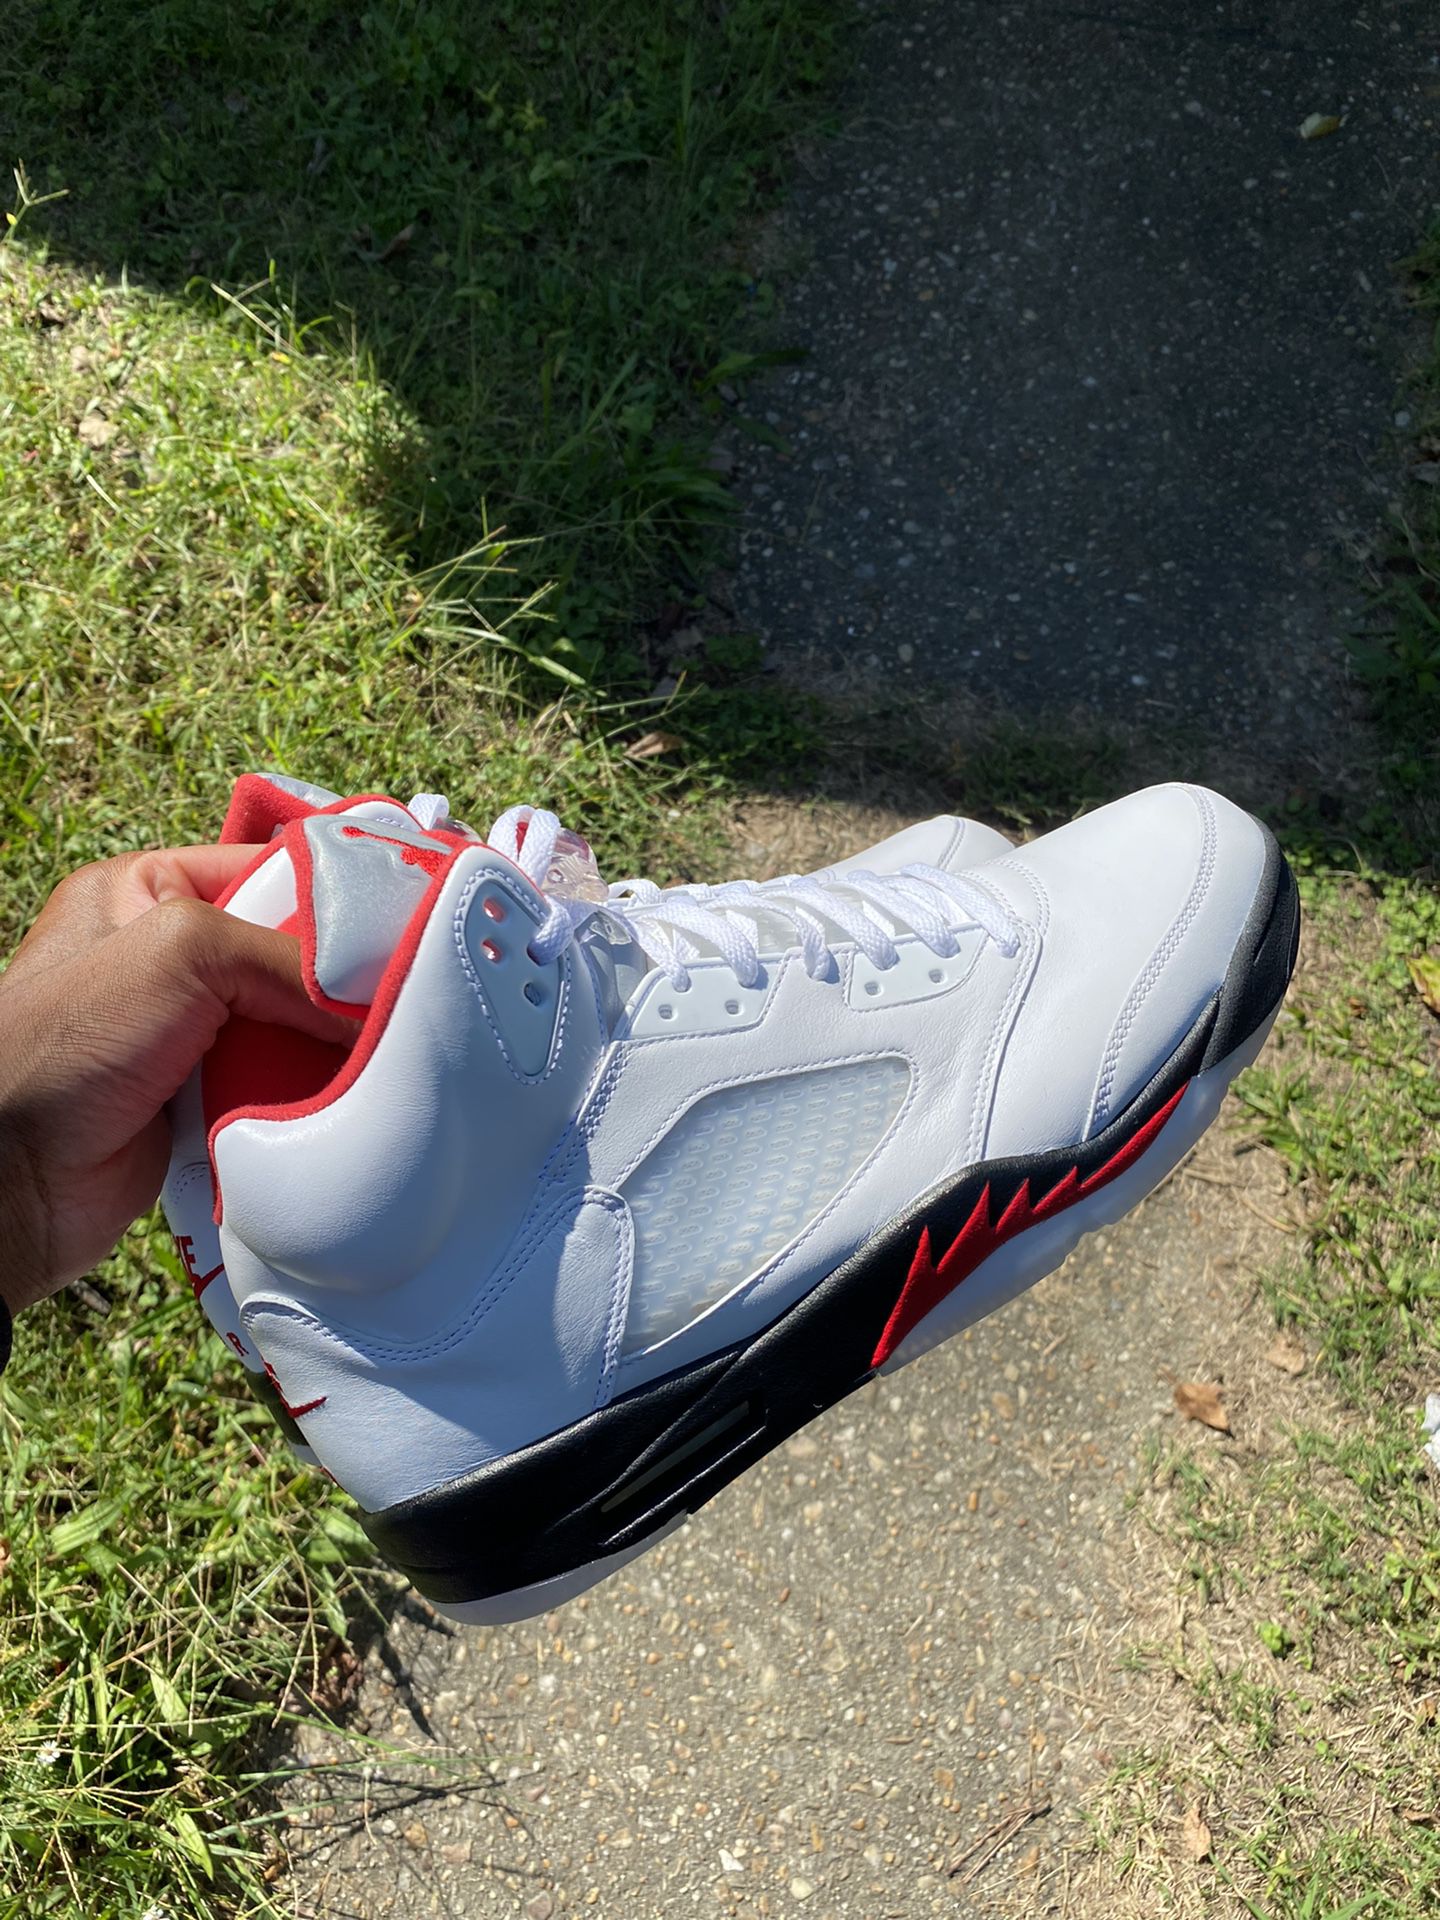 Air Jordan 5 “Fire Red” Size 13